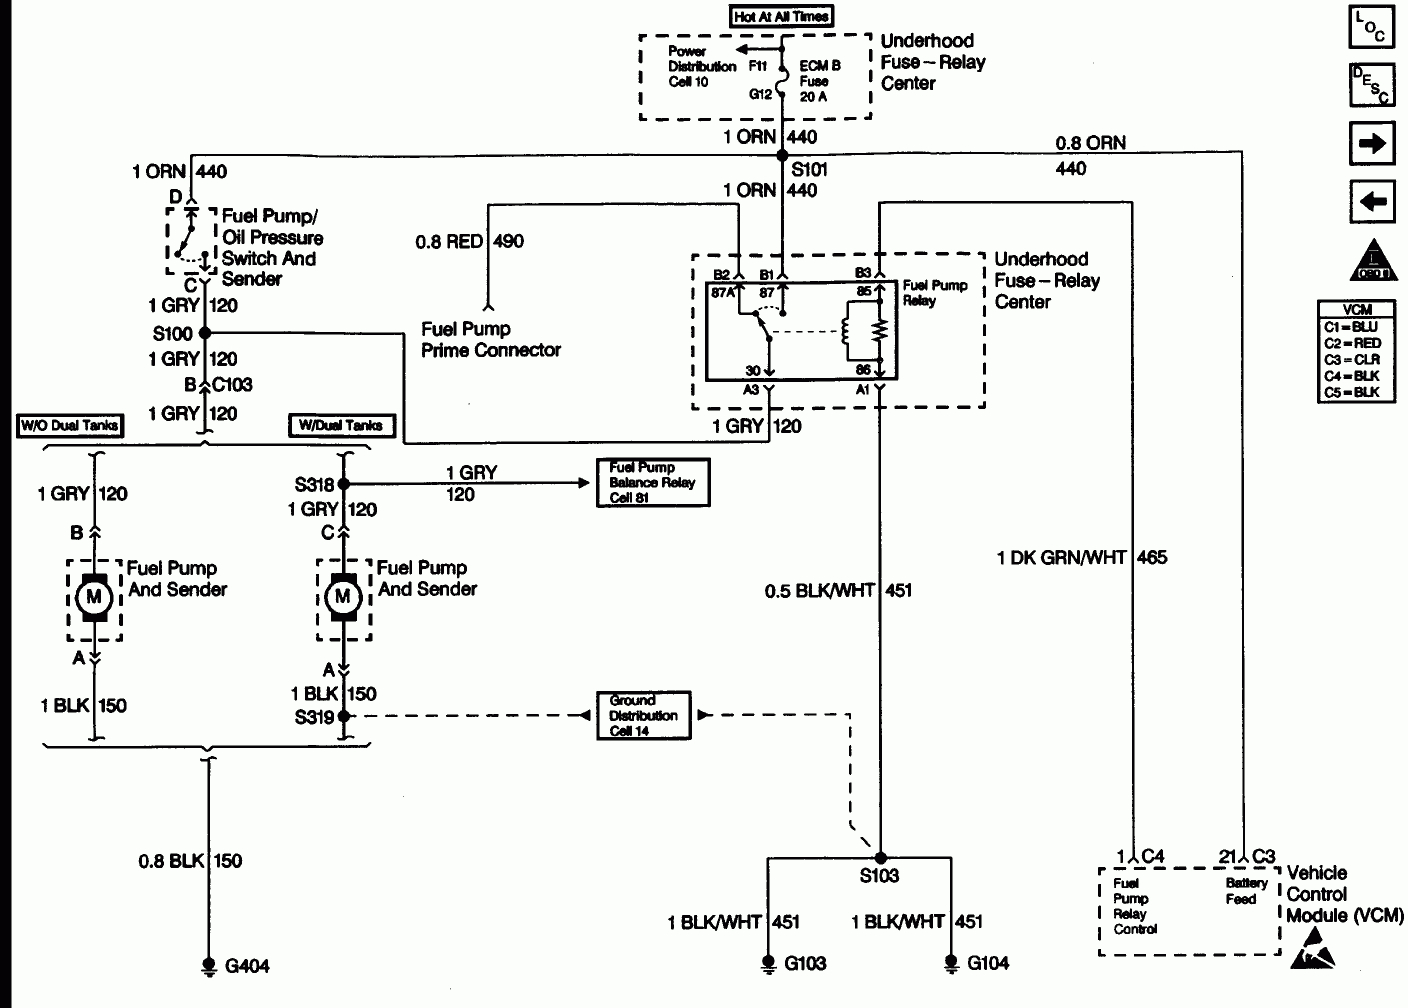 Chevy Silverado 1500 Fuel Pump Wiring Diagram In Addition 2001 - 1998 Chevy Silverado Fuel Pump Wiring Diagram